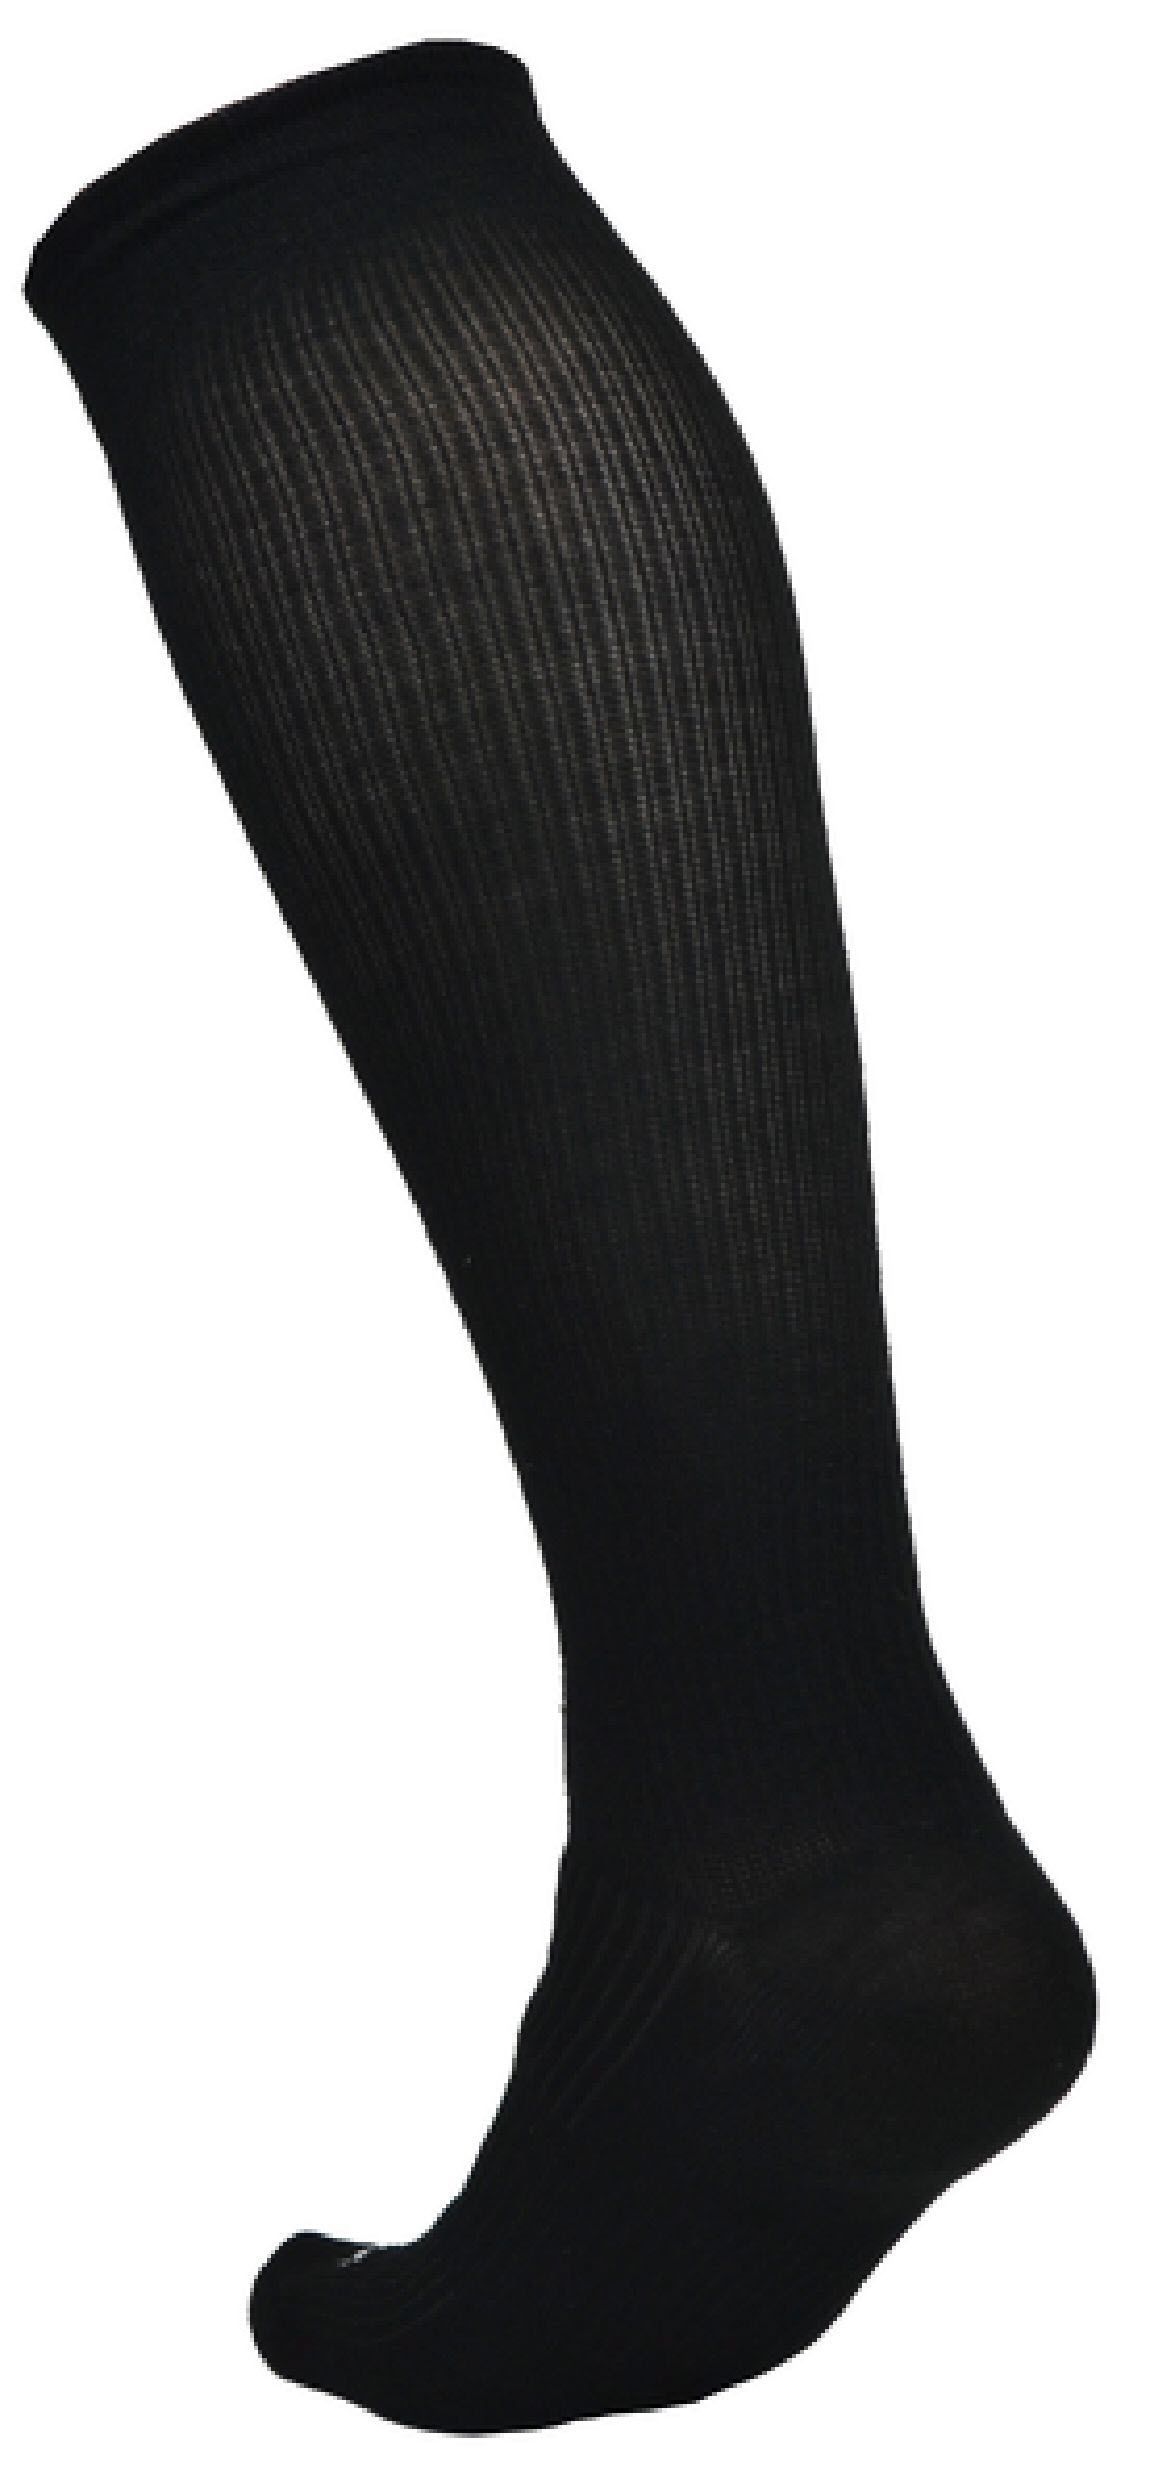 Eco Sox Compression Socks, Black Medium 9-11-Ecosox